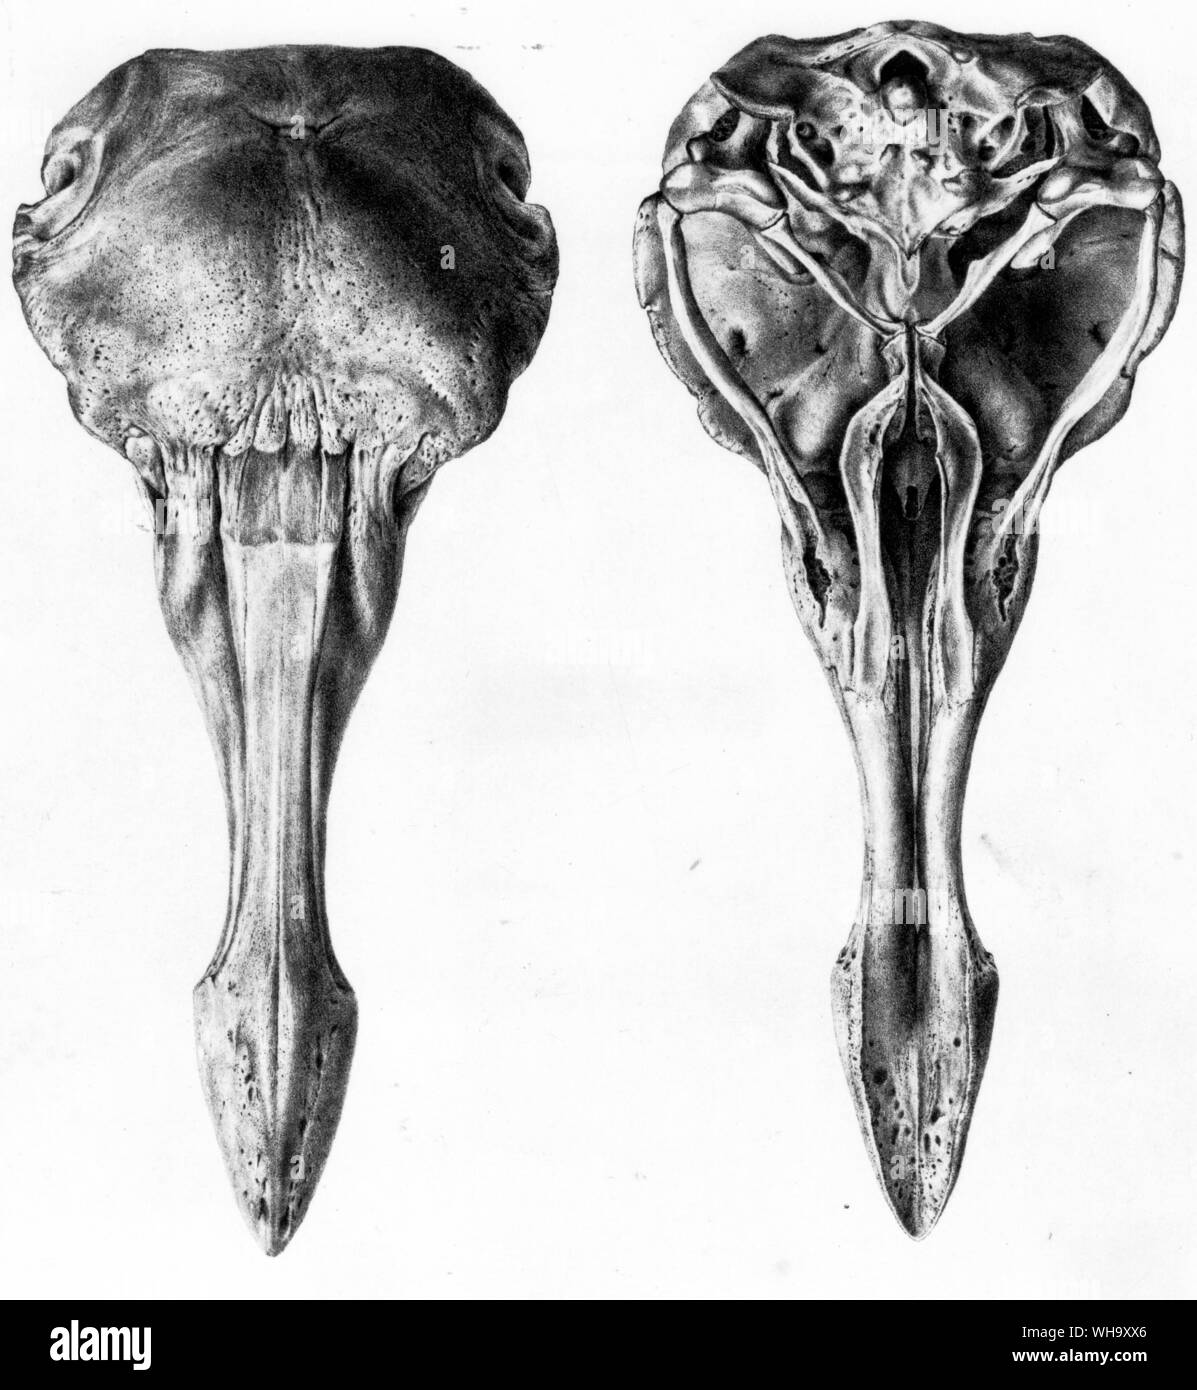 Dodo Schädel von Oben und Unten. Lithographien von SEINER EXZELLENZ Strickland und A.G. Melville der Dodo und seine Verwandtschaft (London, 1848) - Länge der Vogel 100 cm (3 ft 3 in.) Stockfoto